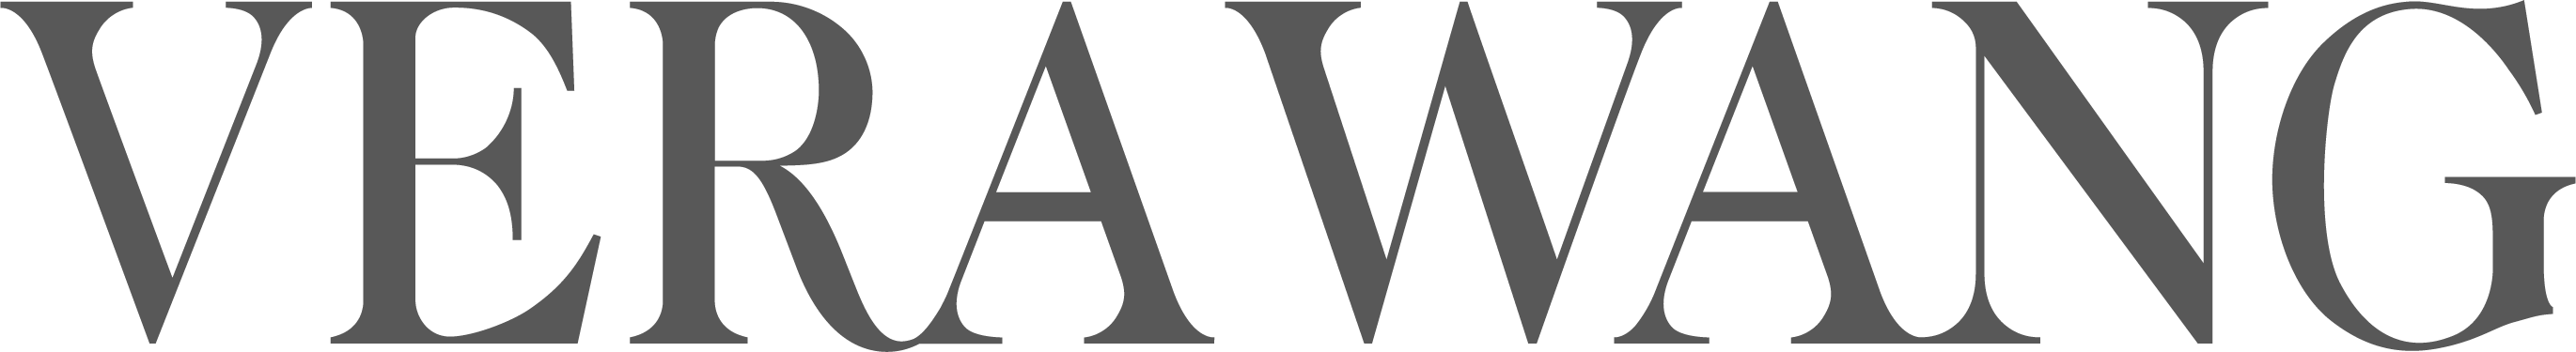 Vera Wang Logo png